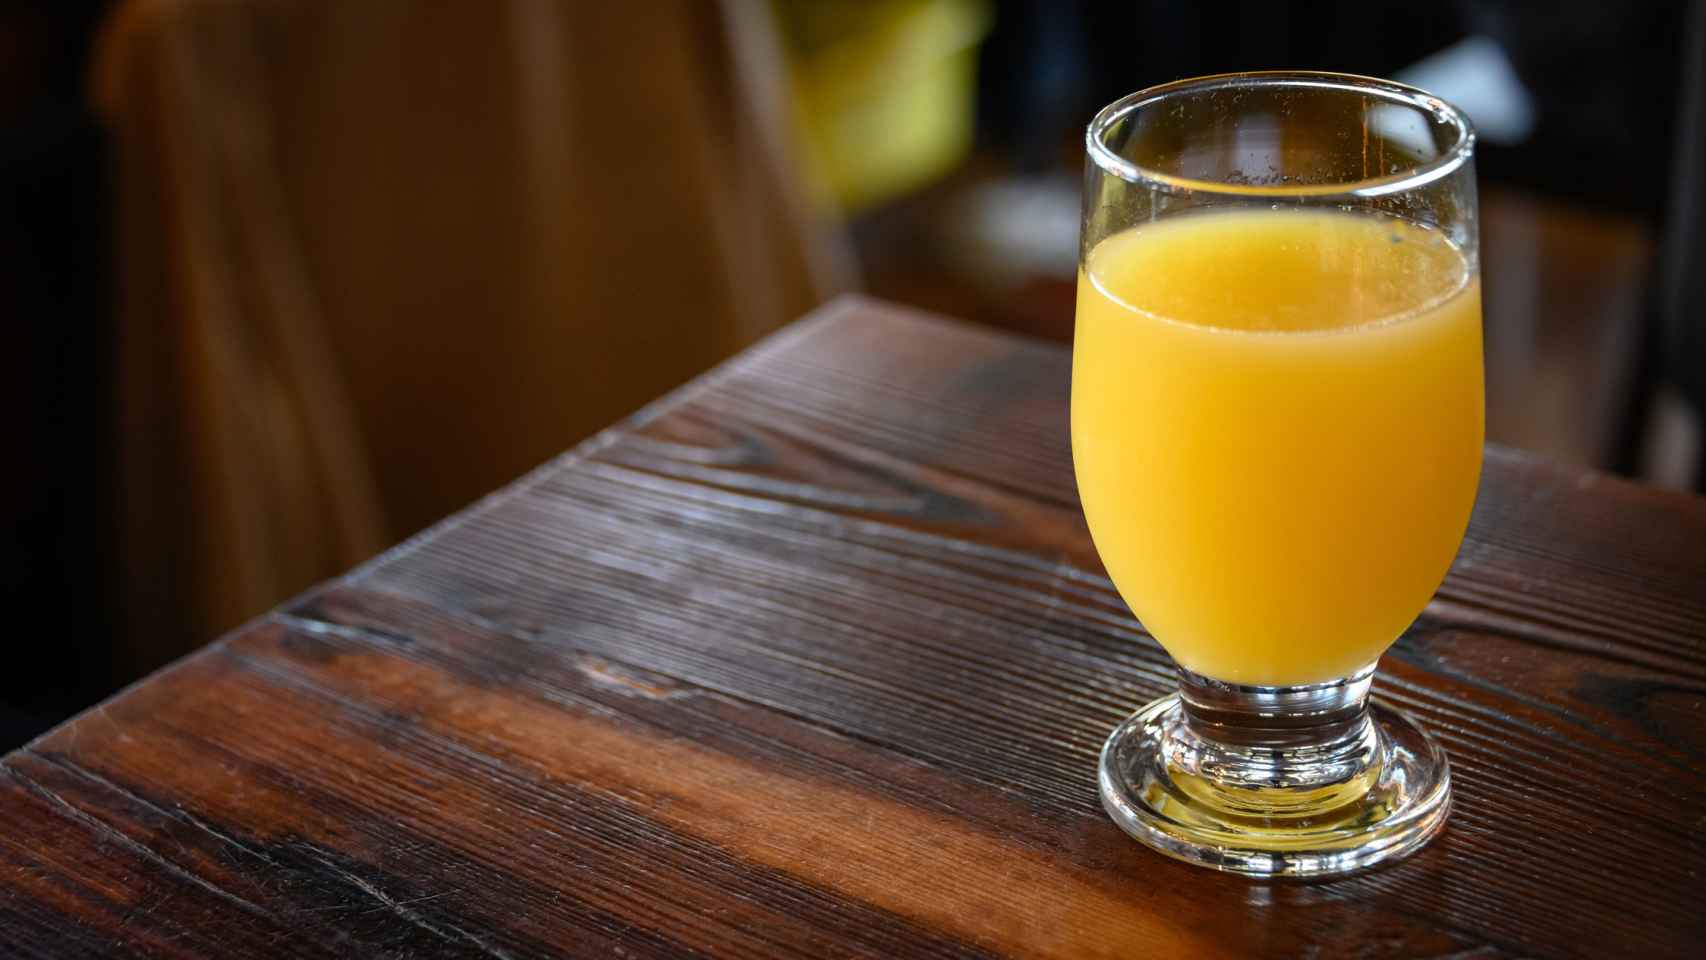 Un vaso de zumo de naranja.